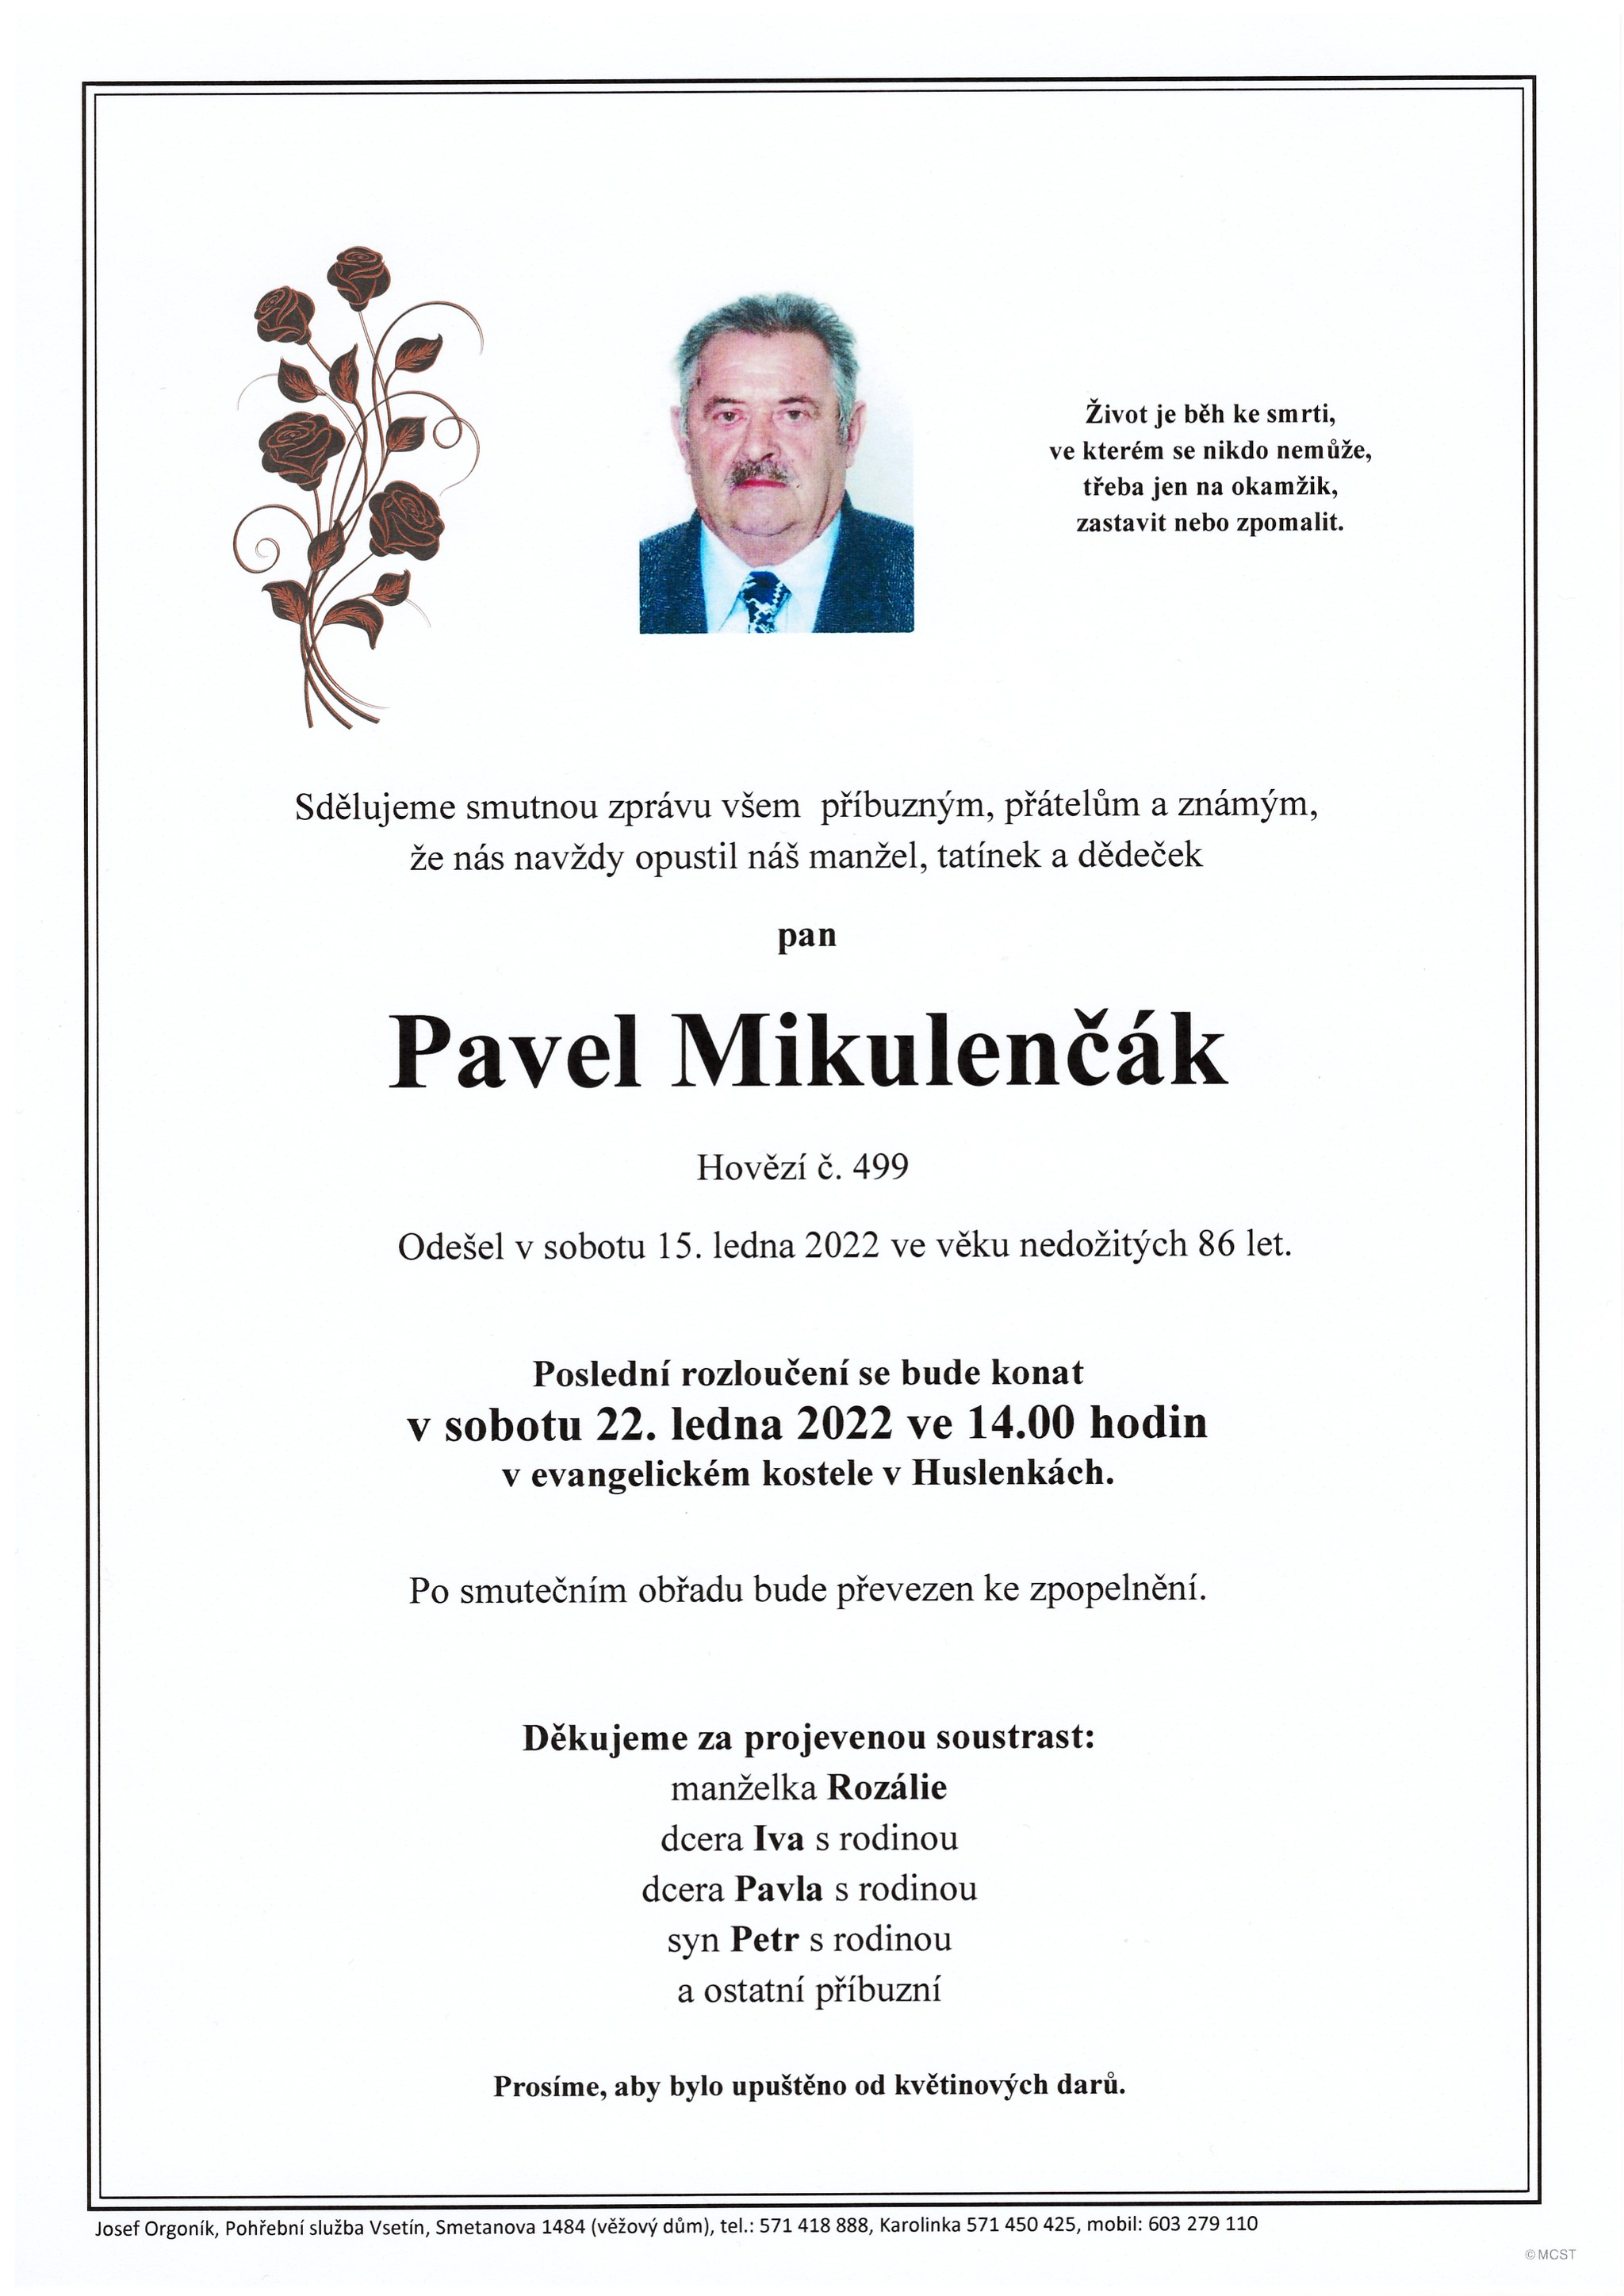 Pavel Mikulenčák